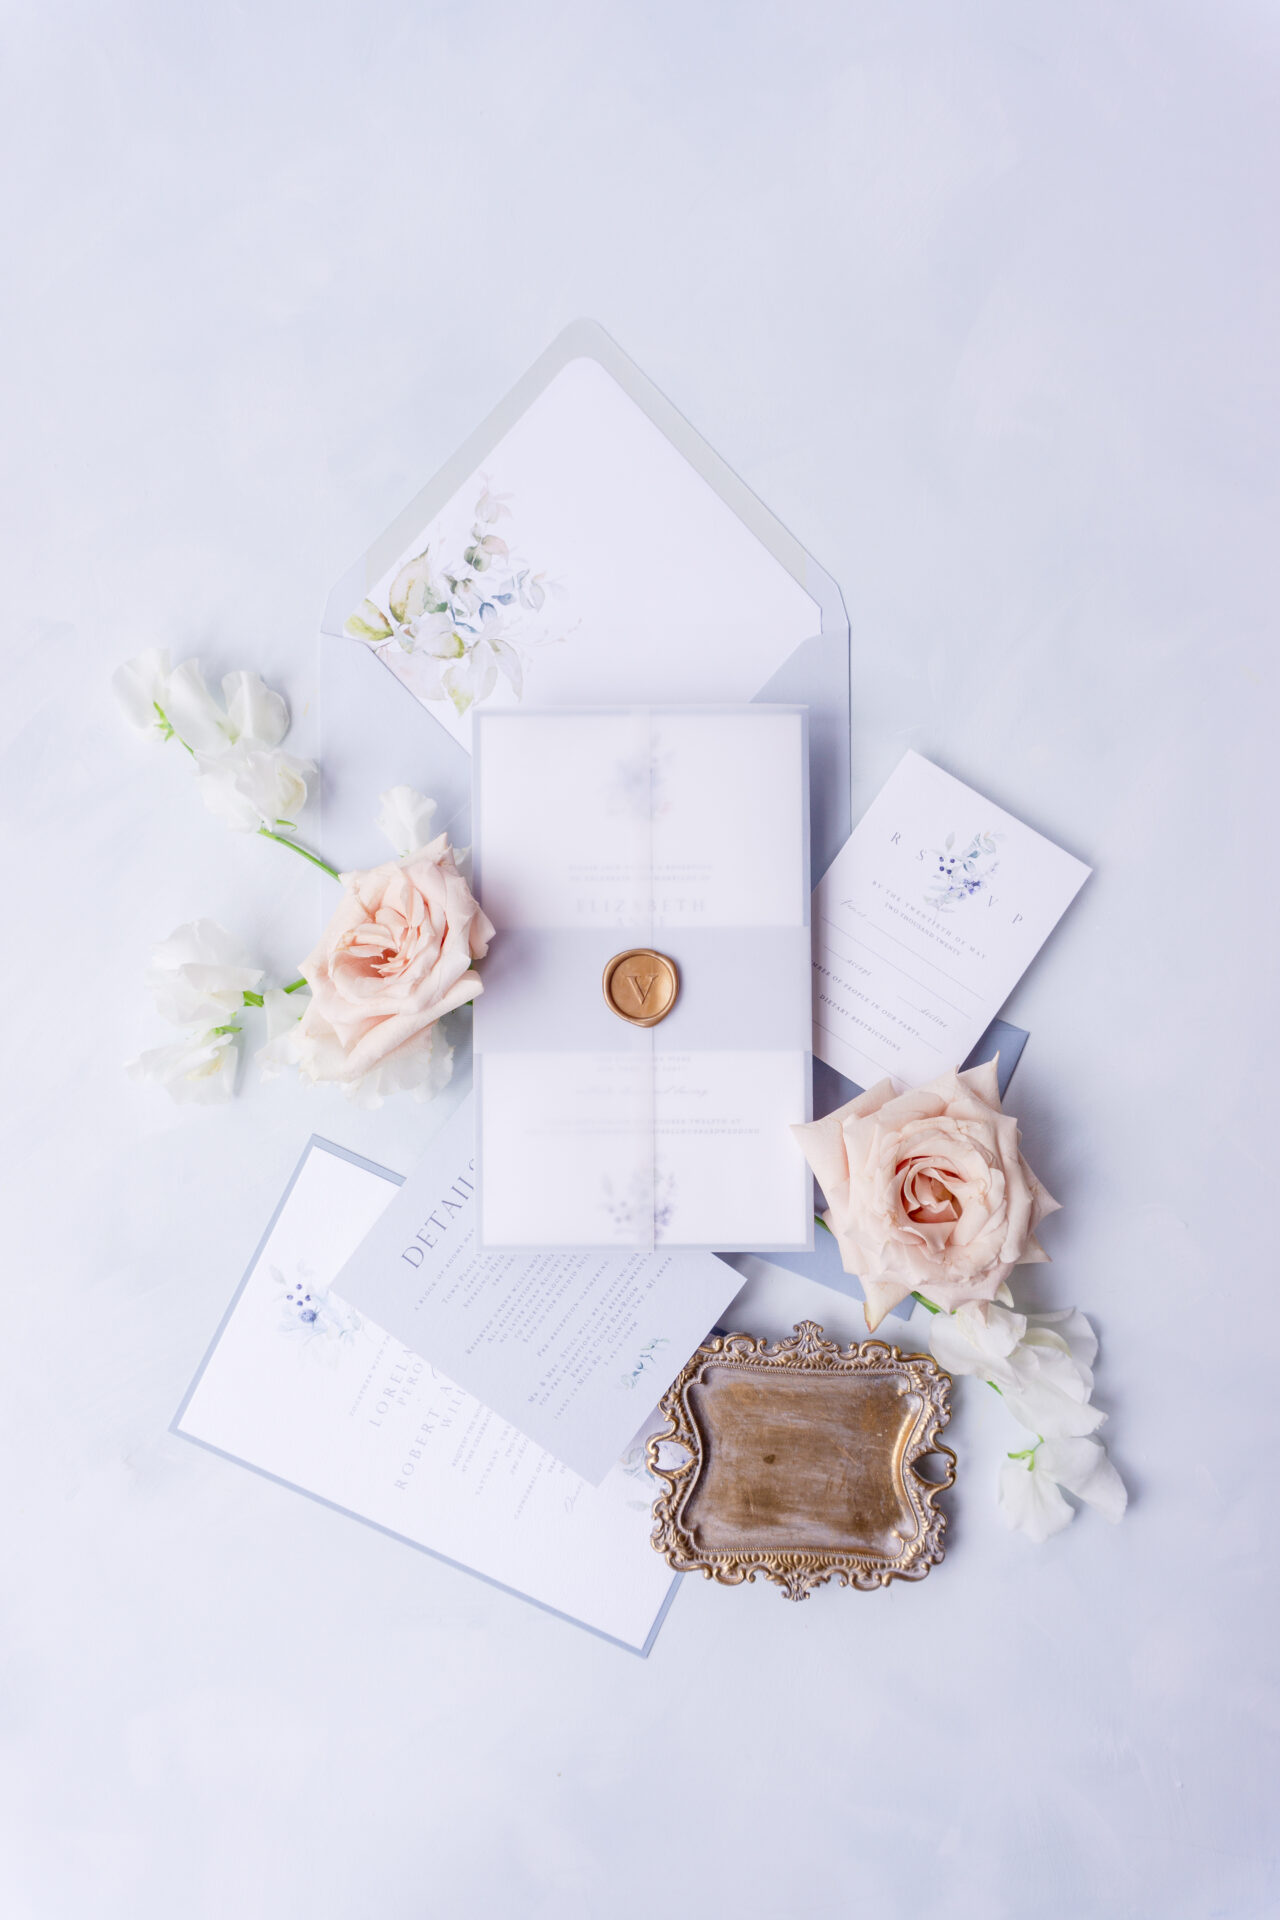 Clear Printed Vellum Envelopes,wedding Envelopes,wedding